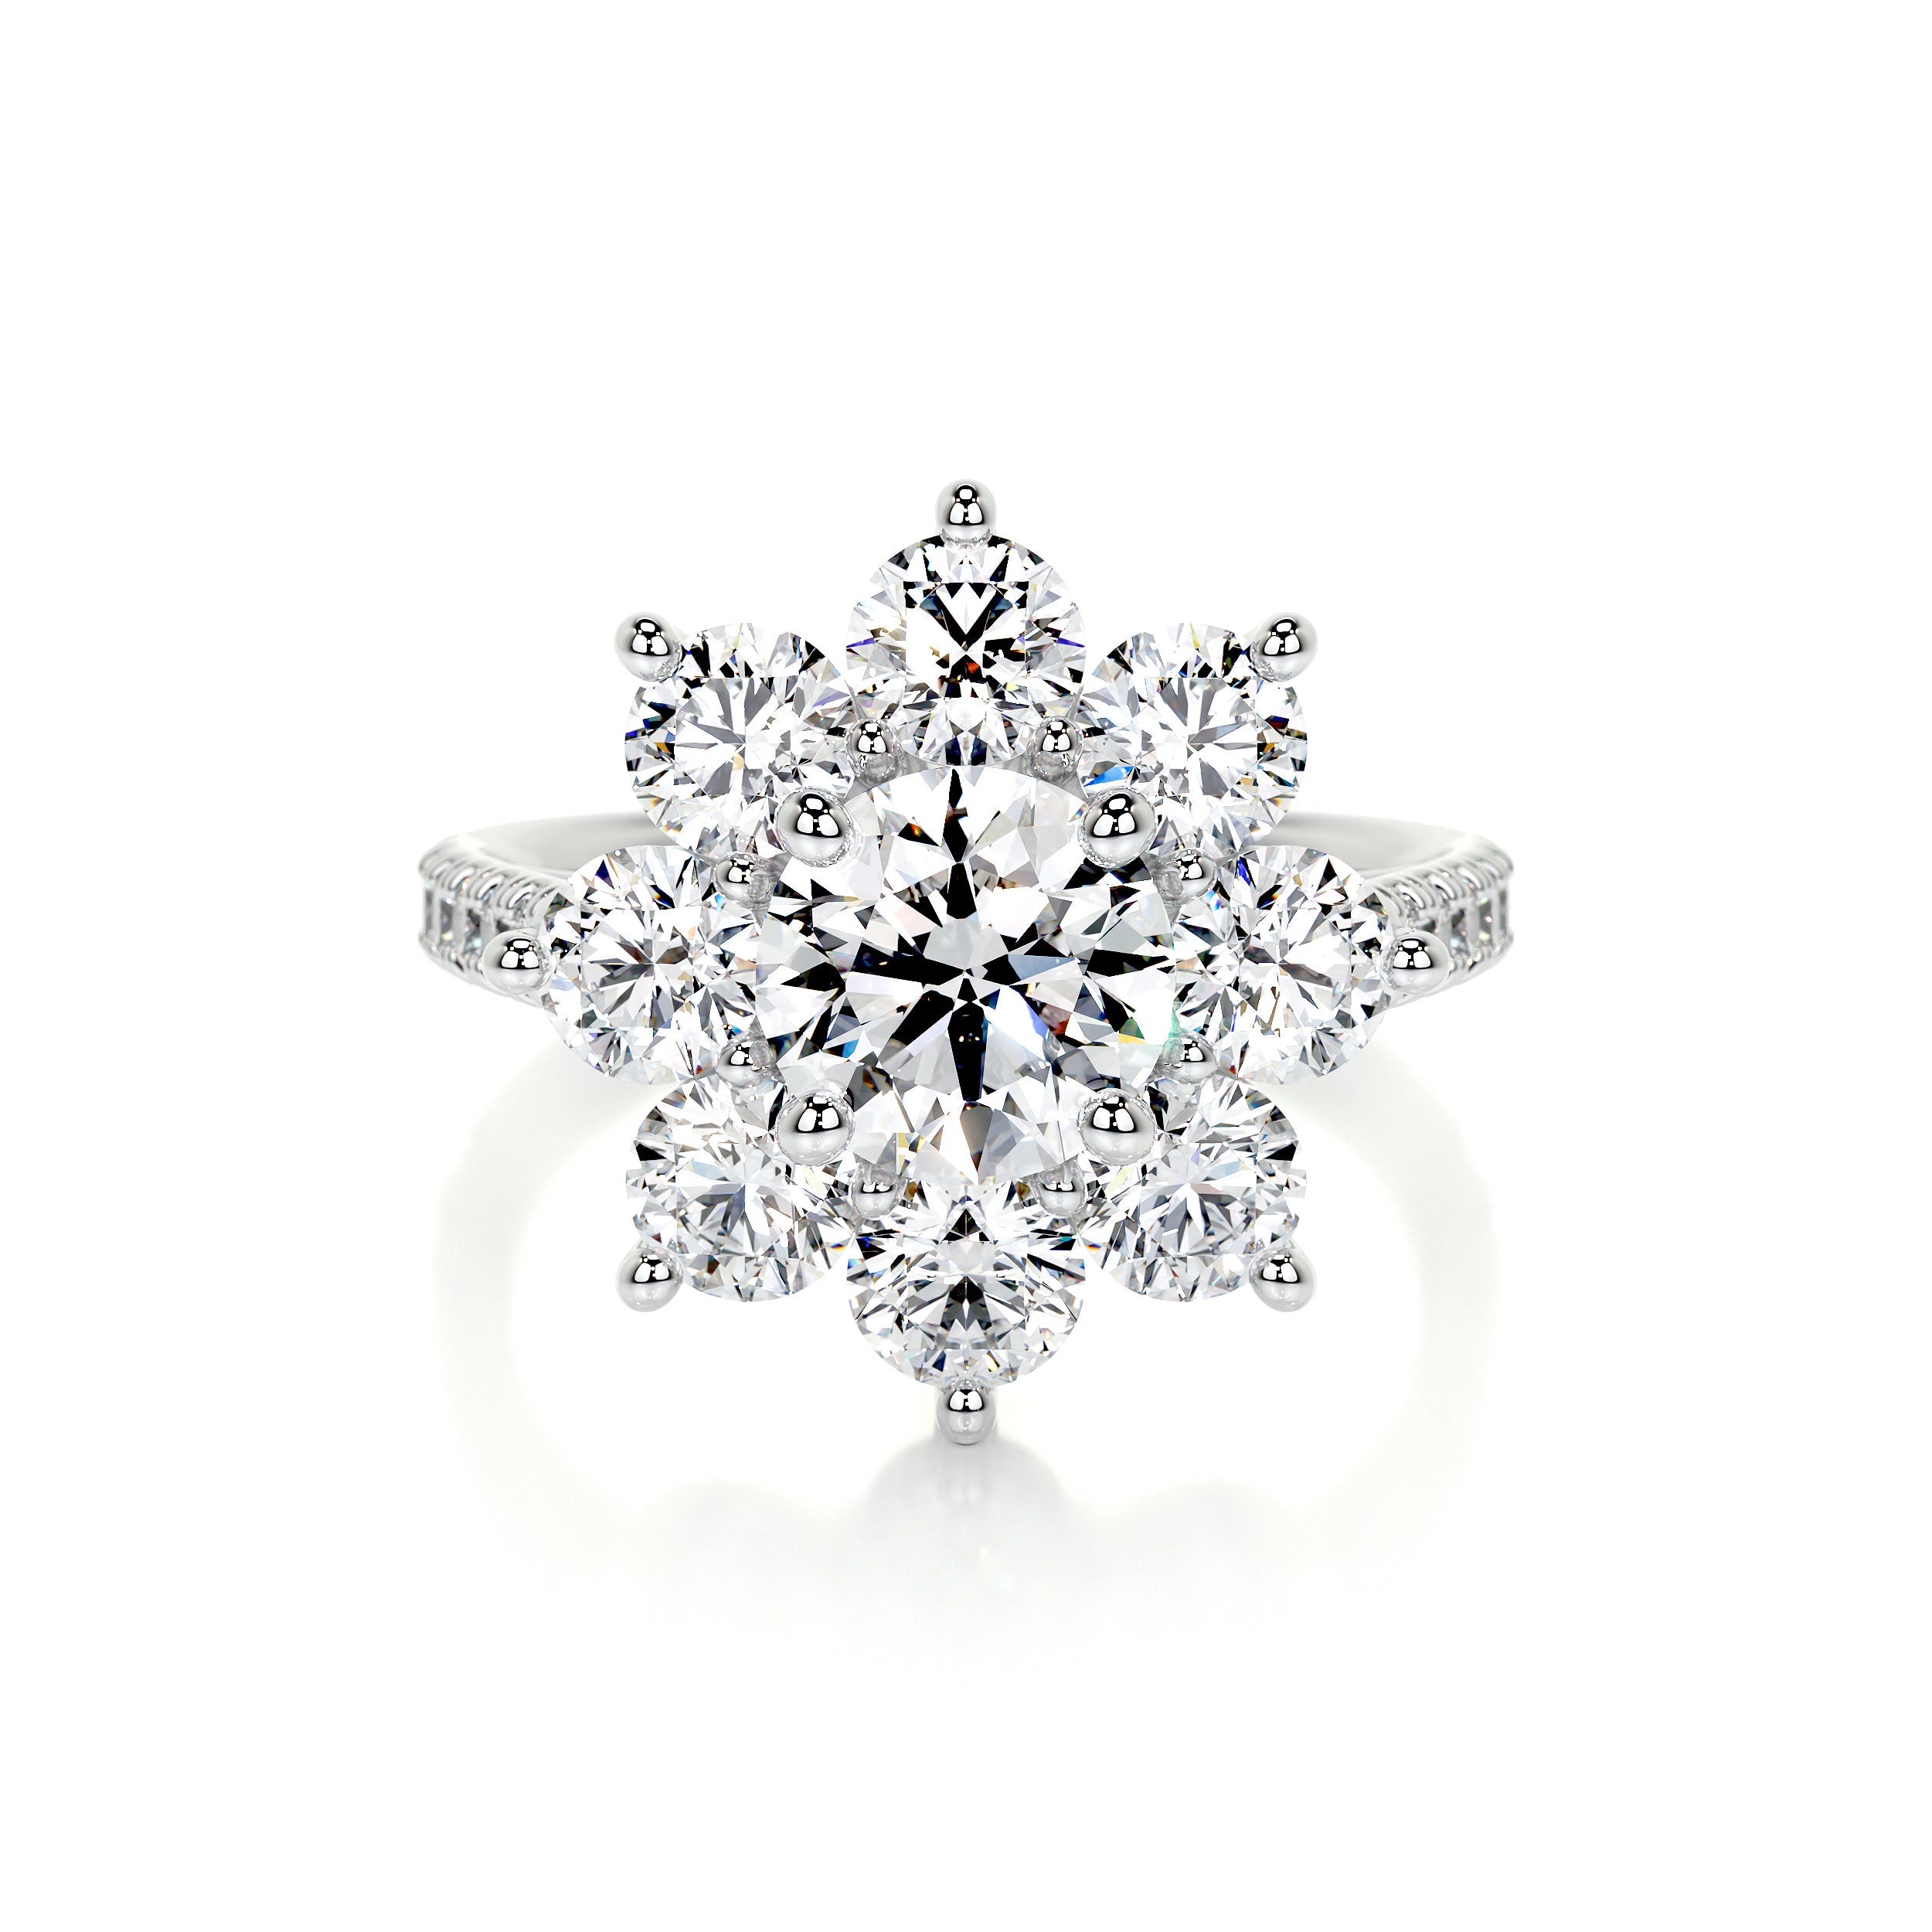 La Fleur Lab Grown Diamond Ring   (2.5 Carat) -14K White Gold